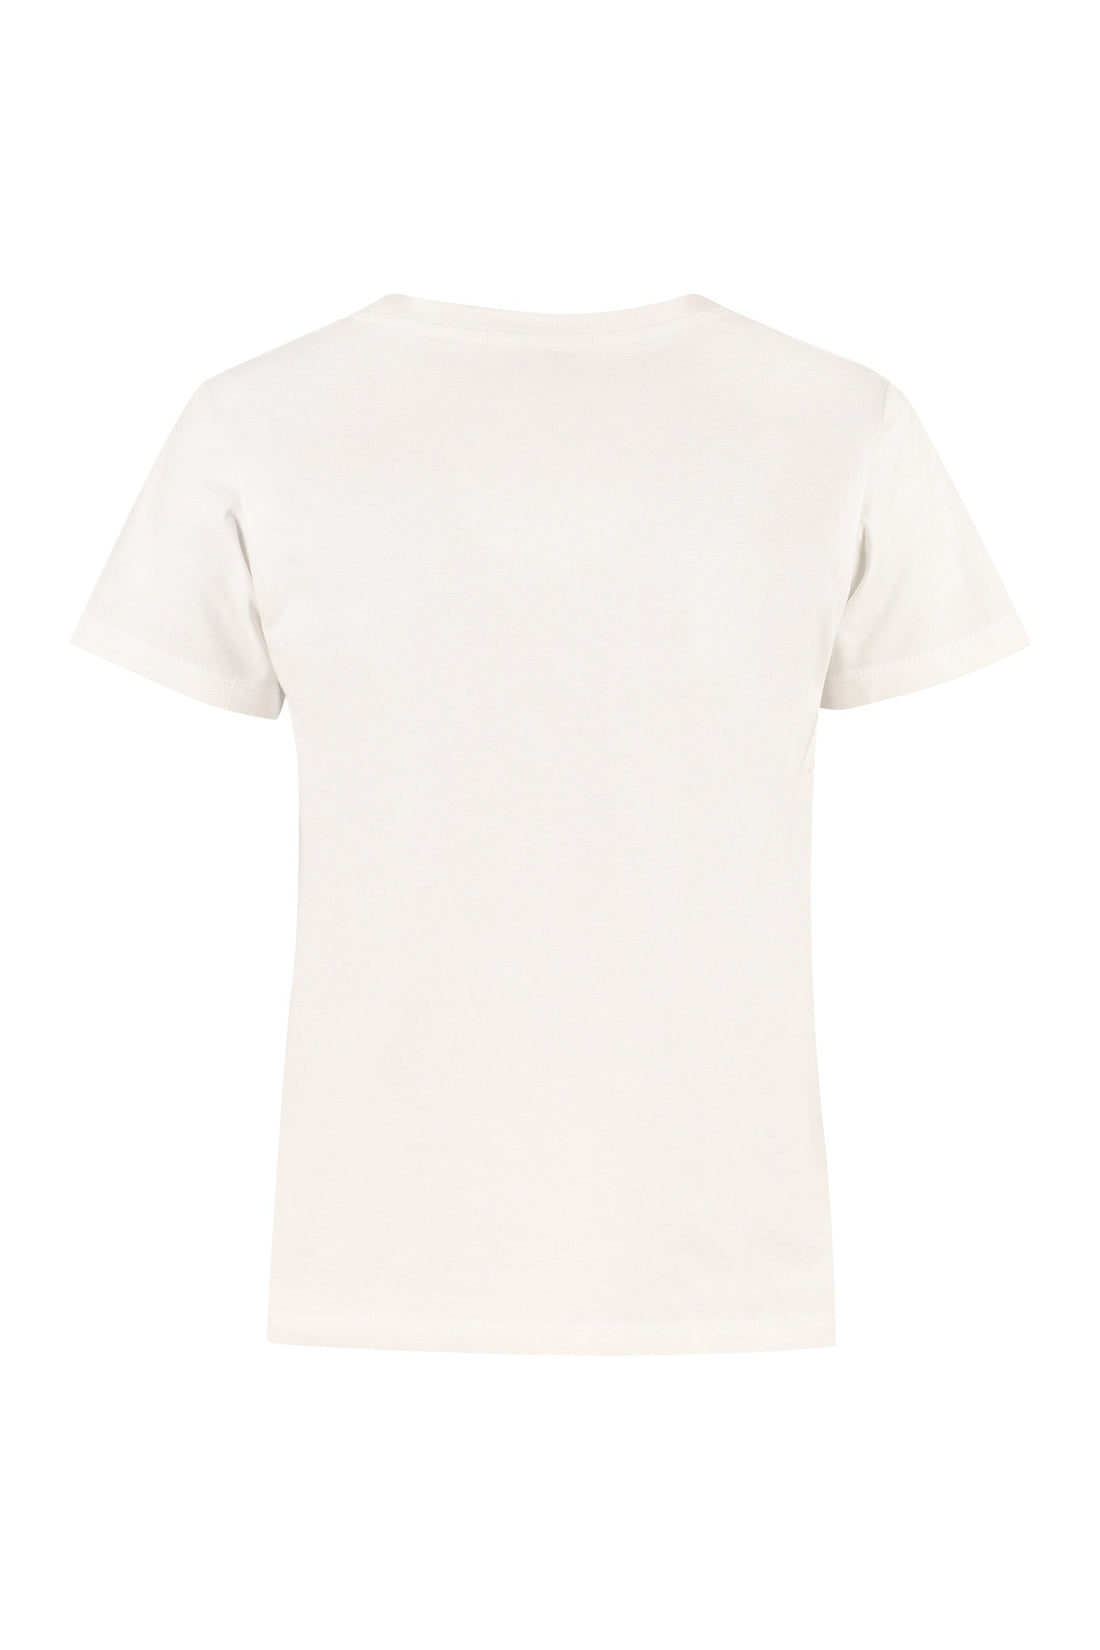 Maison Labiche-OUTLET-SALE-Embroidery cotton t-shirt-ARCHIVIST